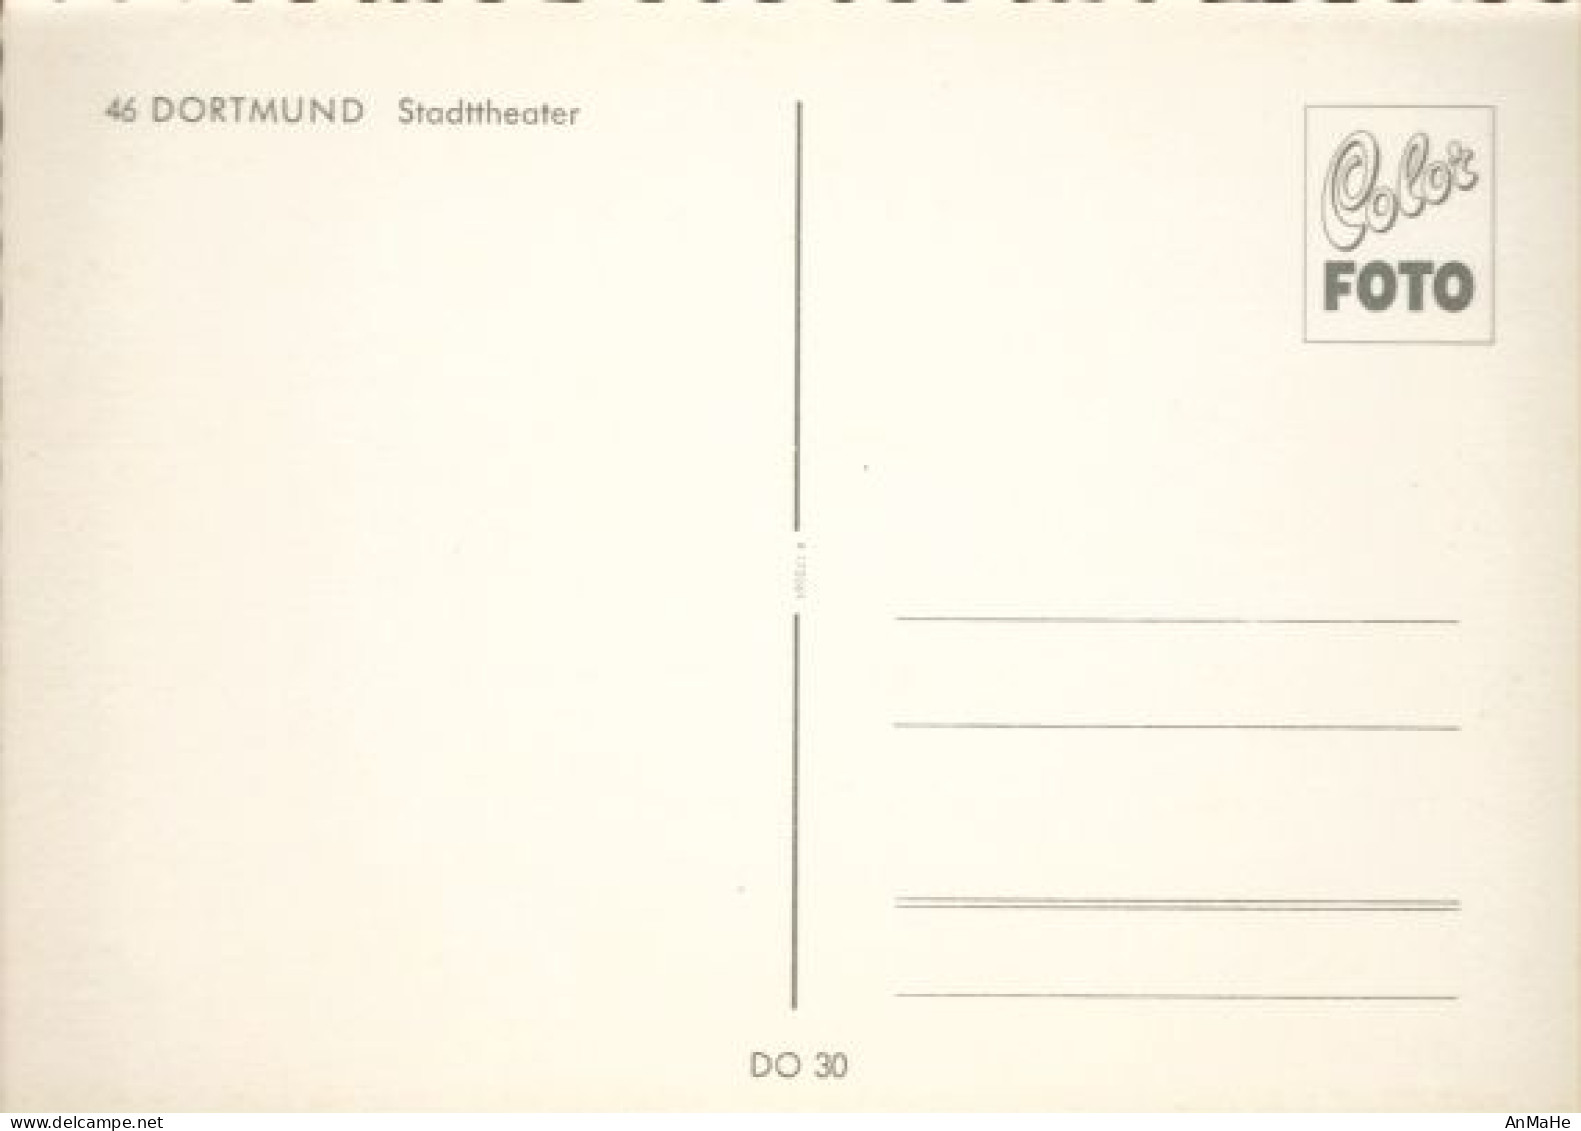 AK122 - Ansichtskarte / Postkarte: Deutschland - Dortmund - Stadttheater - Dormagen